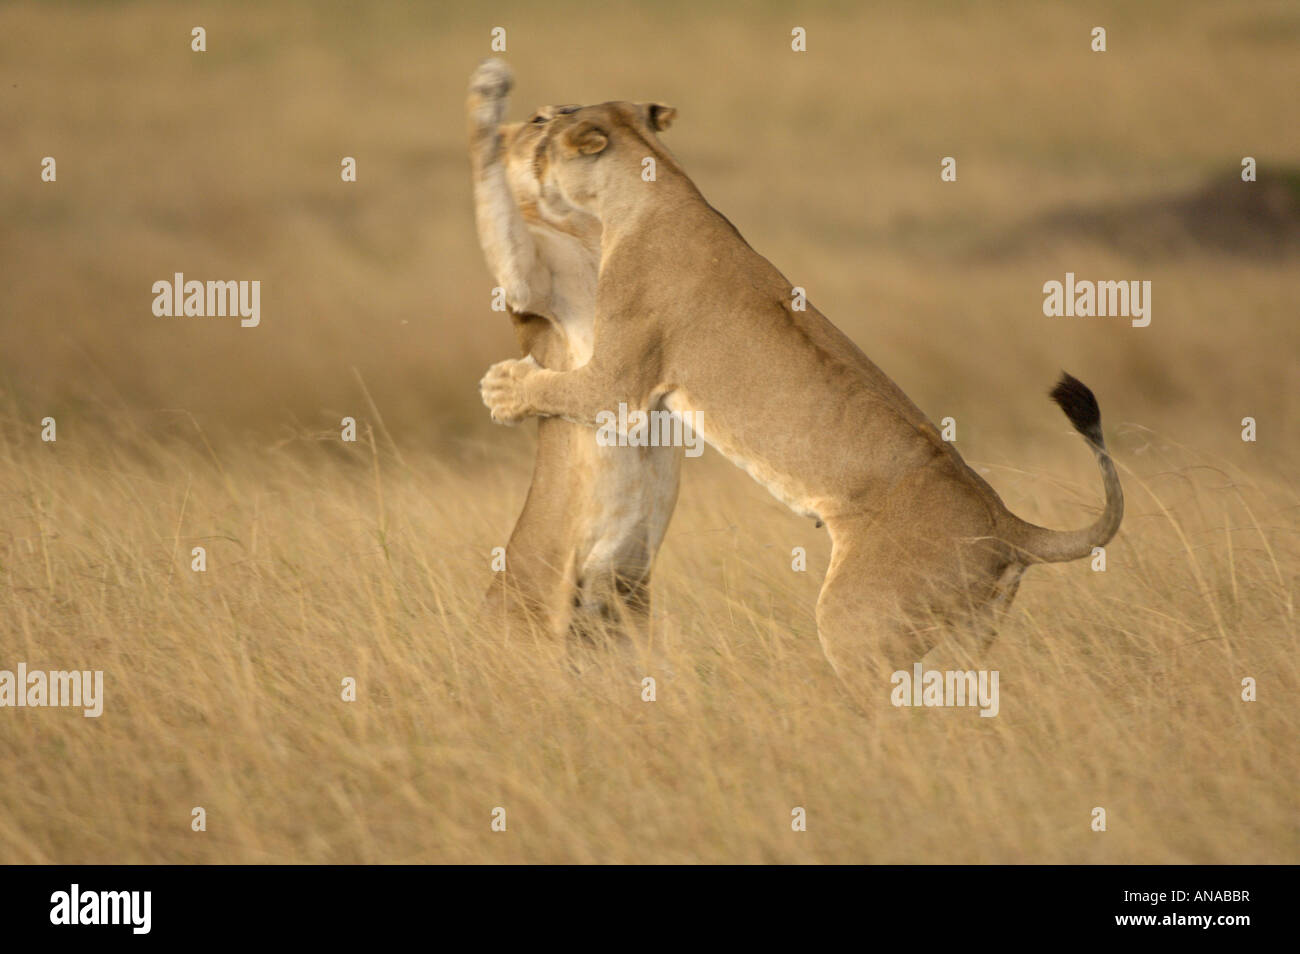 Lion cubs at play (Panthera leo) Stock Photo